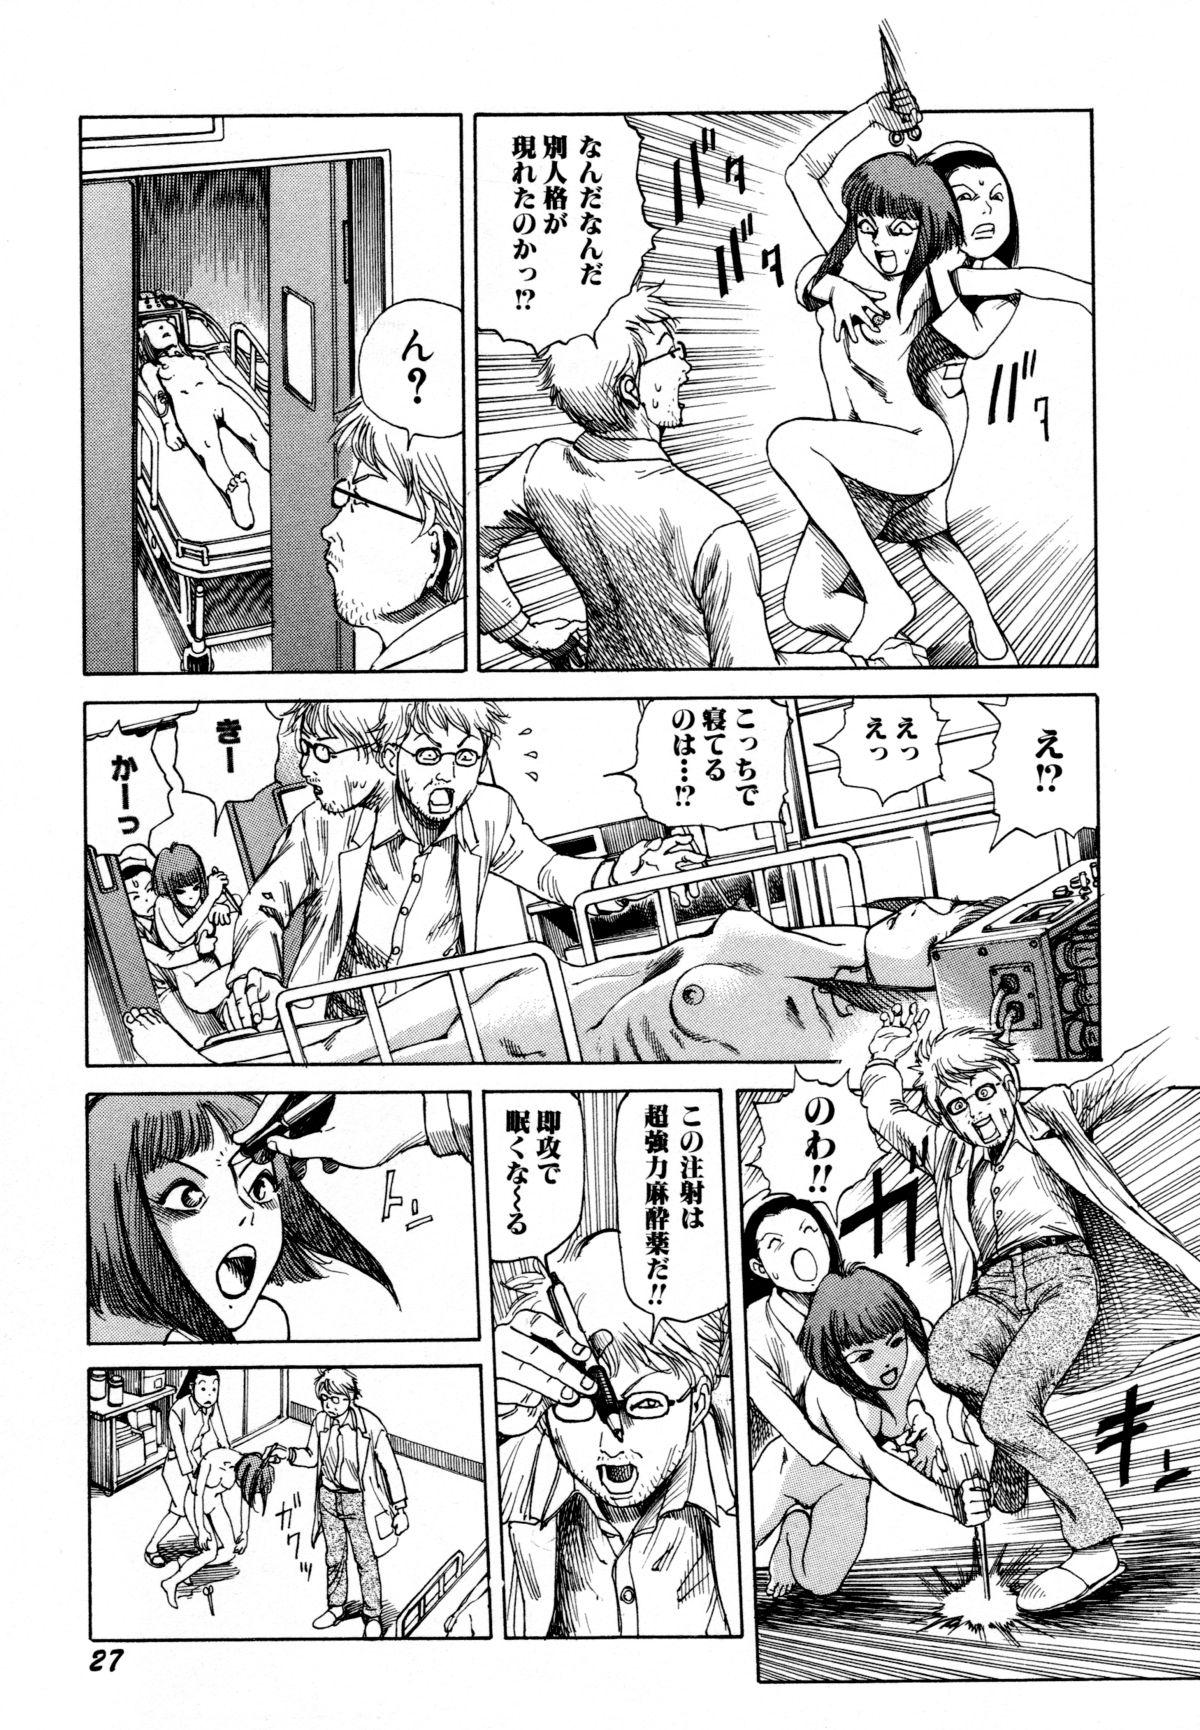 Arijigoku vs Barabara Shoujo - Antlion vs BaraBara Girl 28